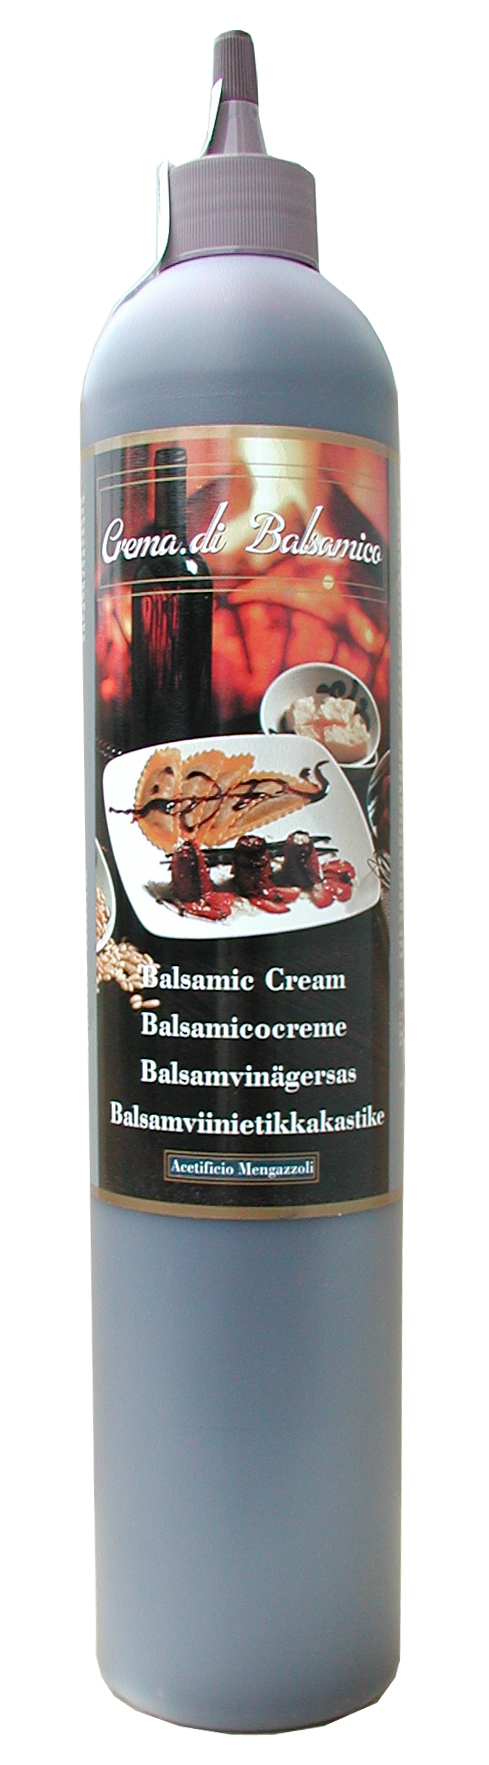 Creme aus Balsamessig classic, 540 g